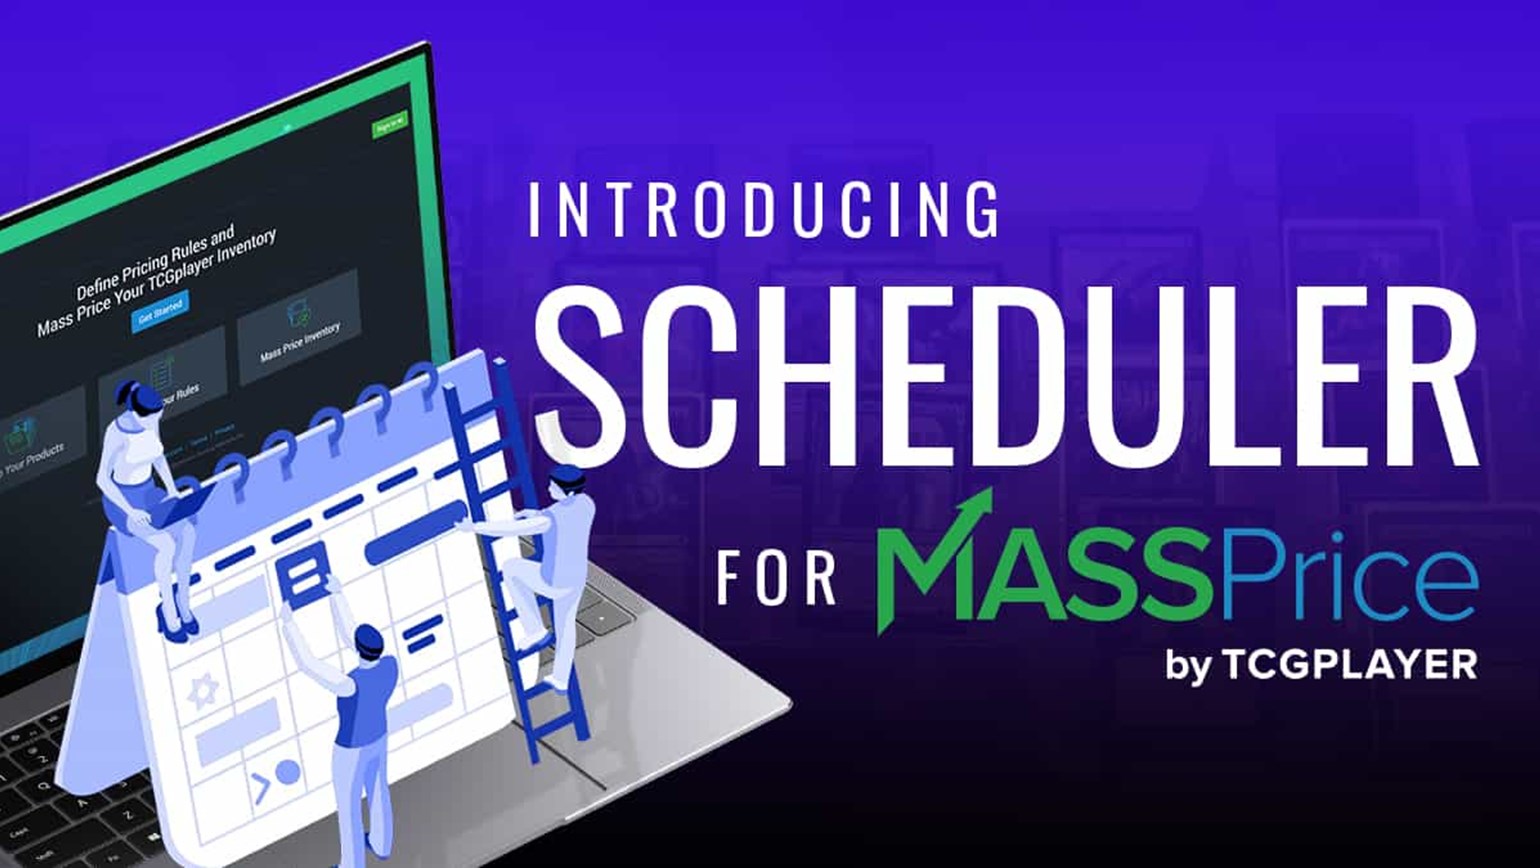 Introducing: Scheduler for MassPrice